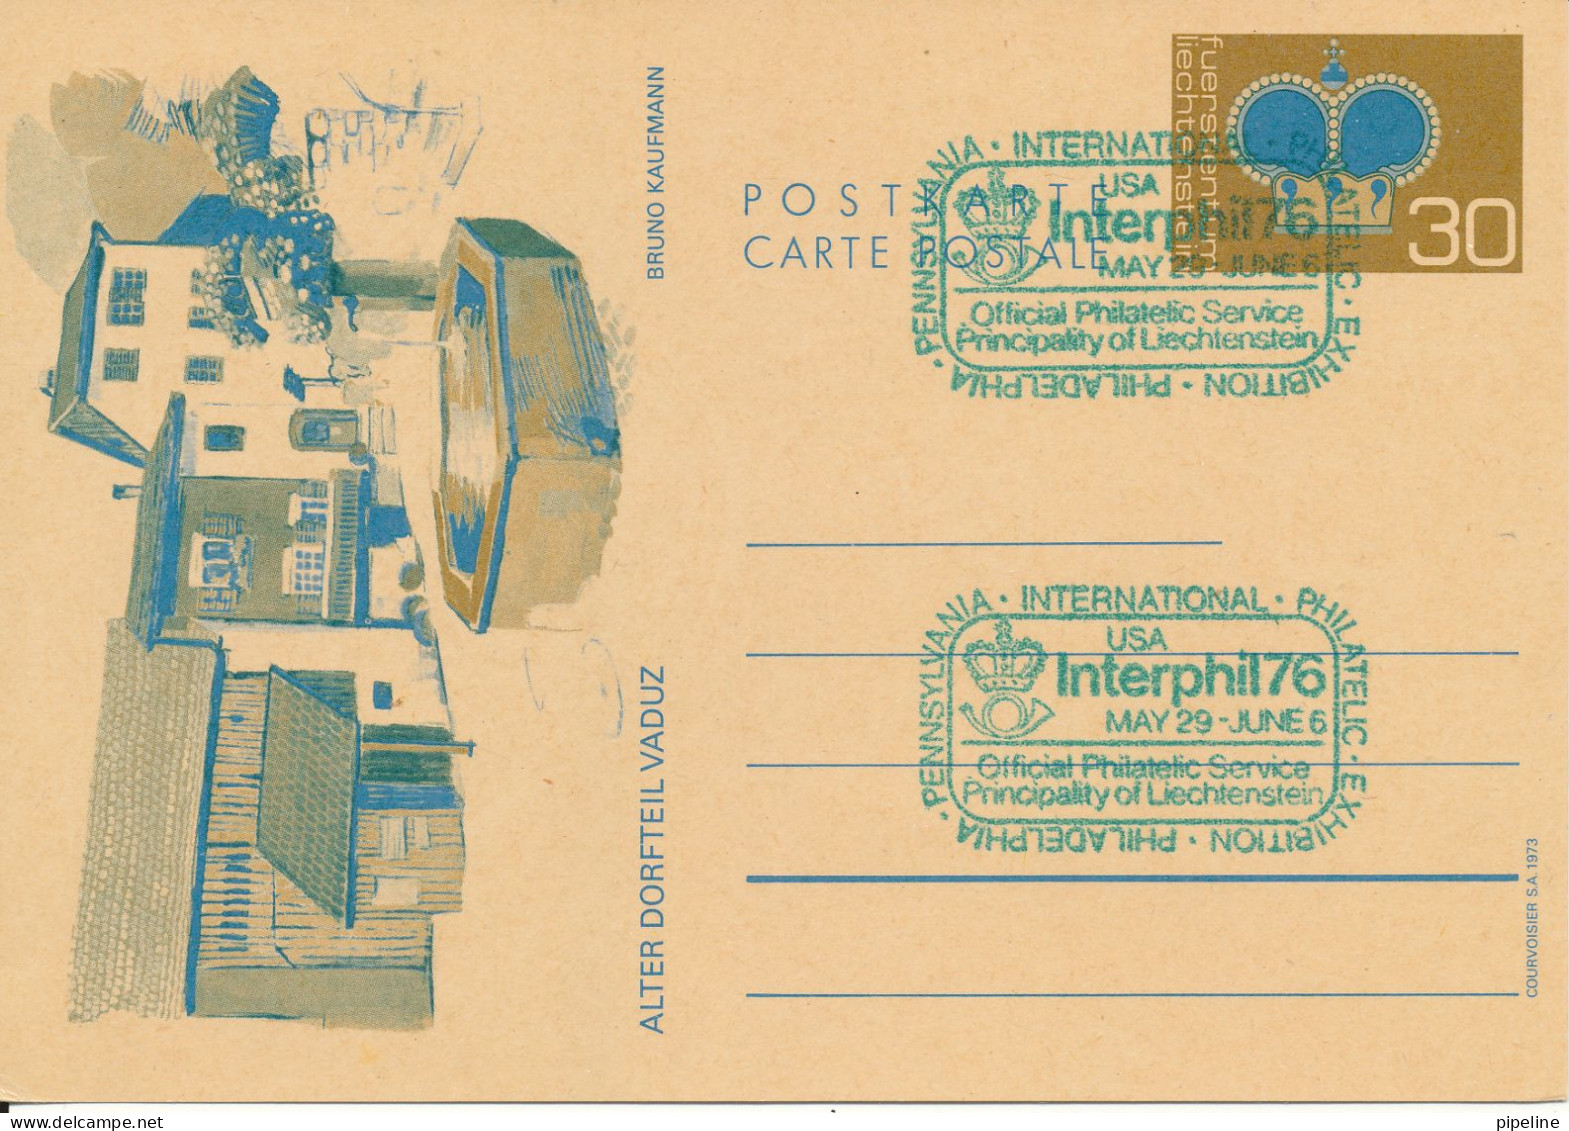 Liechtenstein Postal Stationery Card Interphil 76 USA 29-5 - 6-6-1976 - Ganzsachen